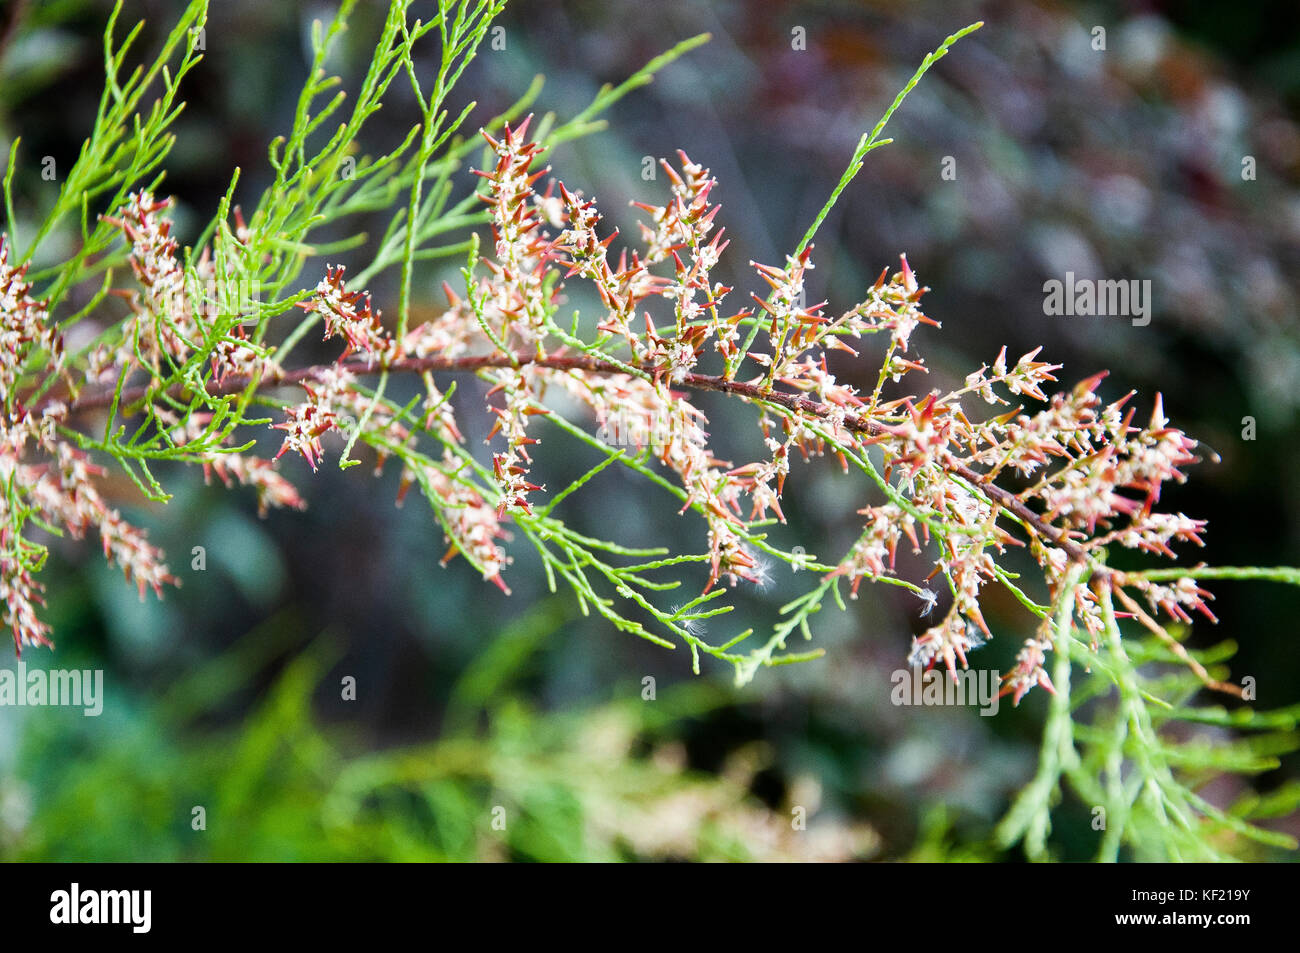 Tamarisk or Athel pine shrub, Tamarix aphylla Stock Photo